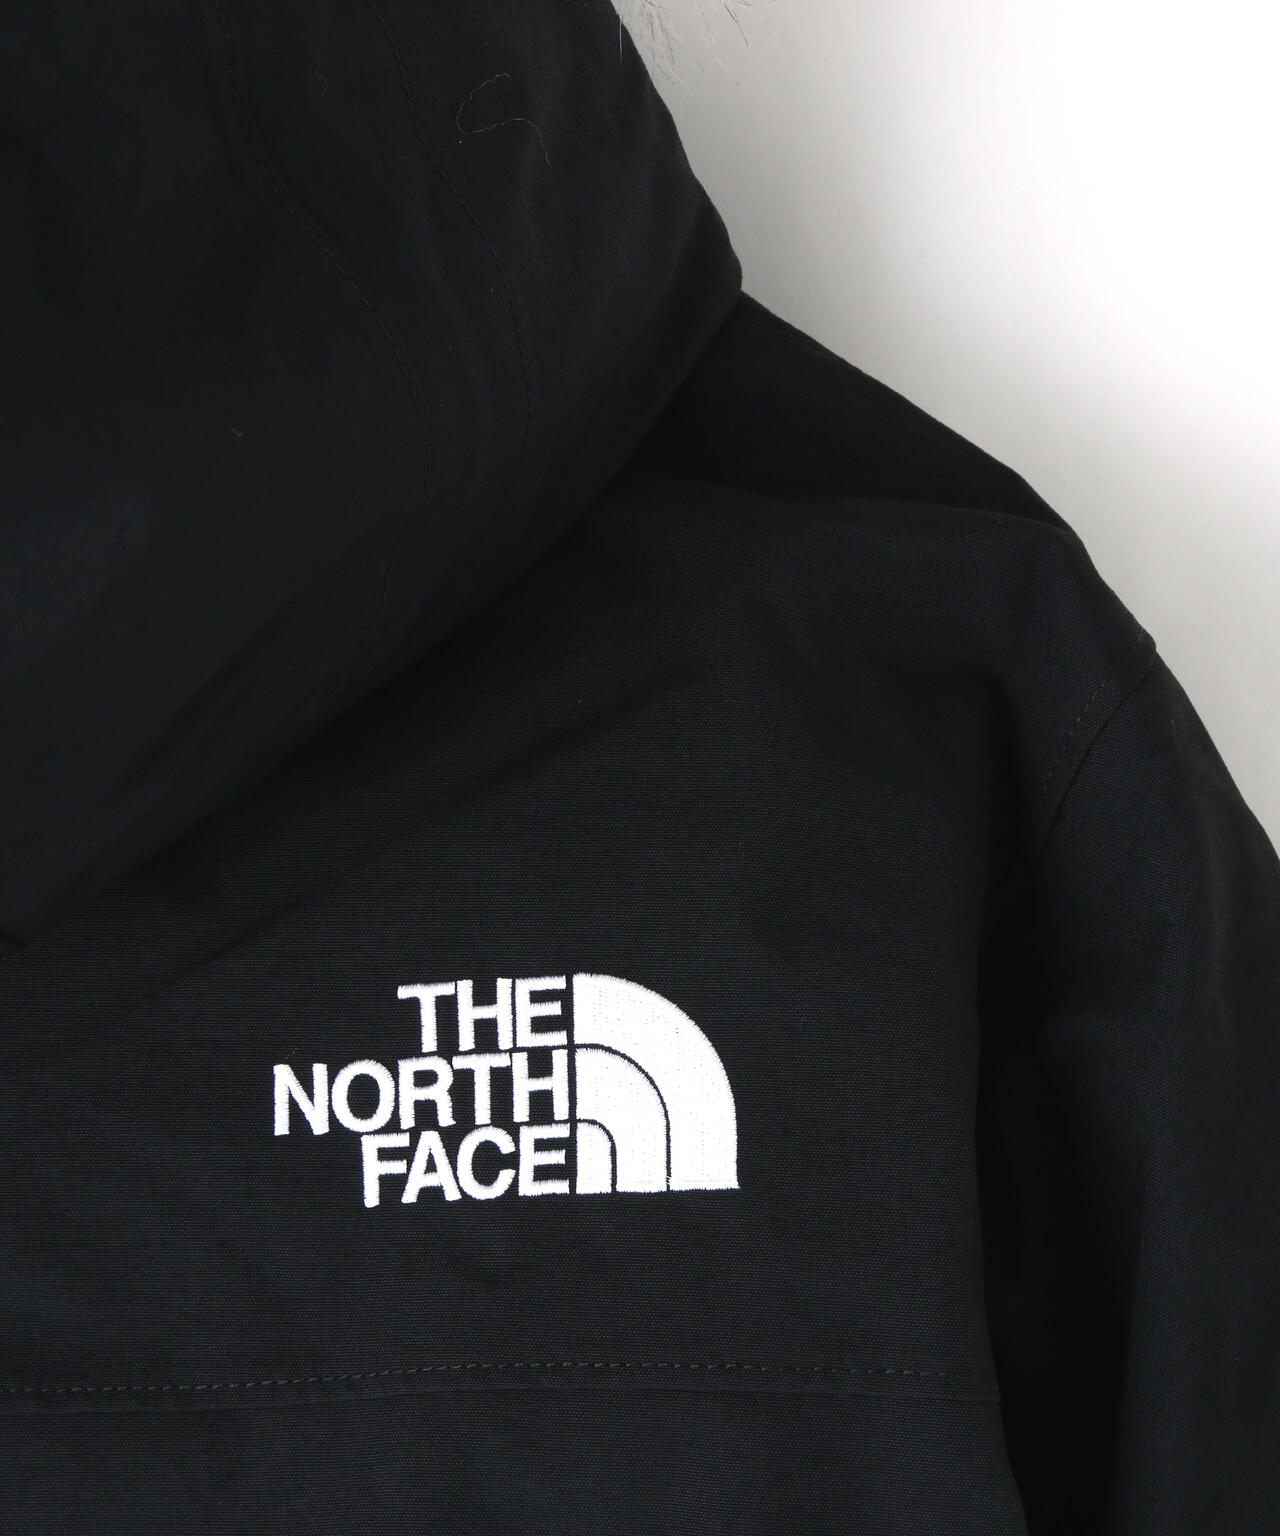 THE NORTH FACE/ザ・ノースフェイス/Antarctica Parka/アンタークティカパーカー